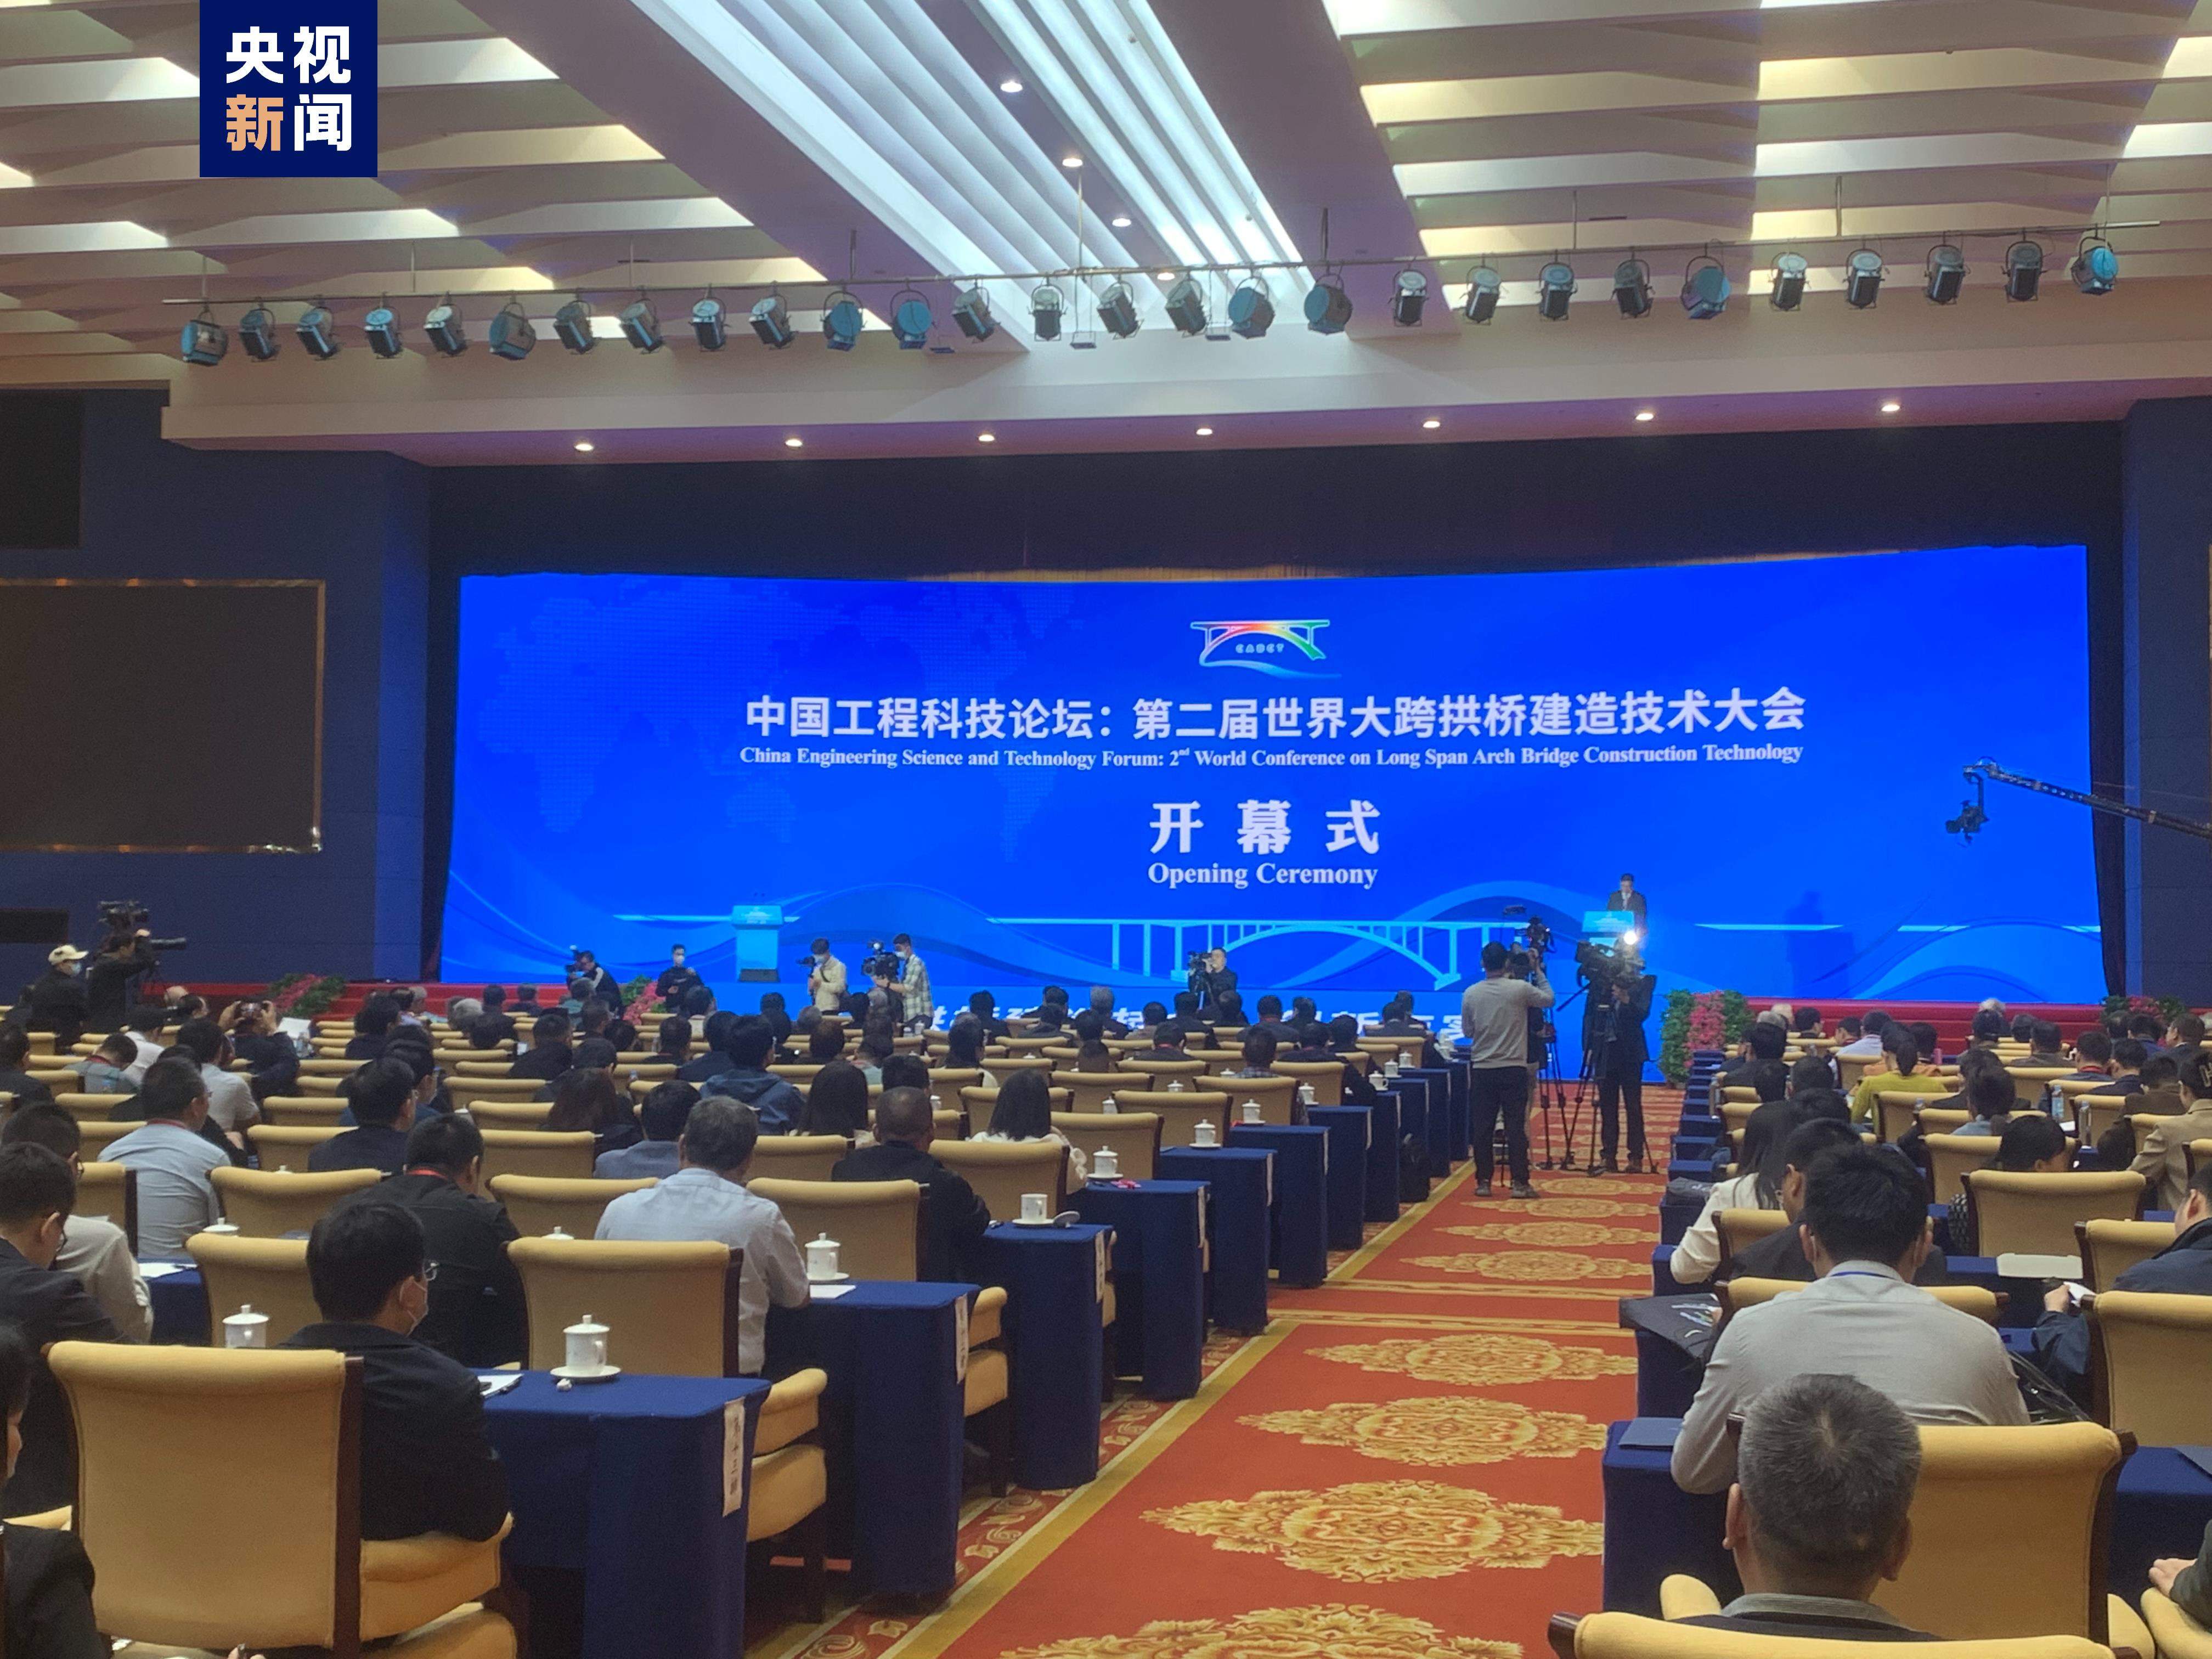 中国工程科技论坛暨第二届世界大跨拱桥建造技术大会在南宁举行